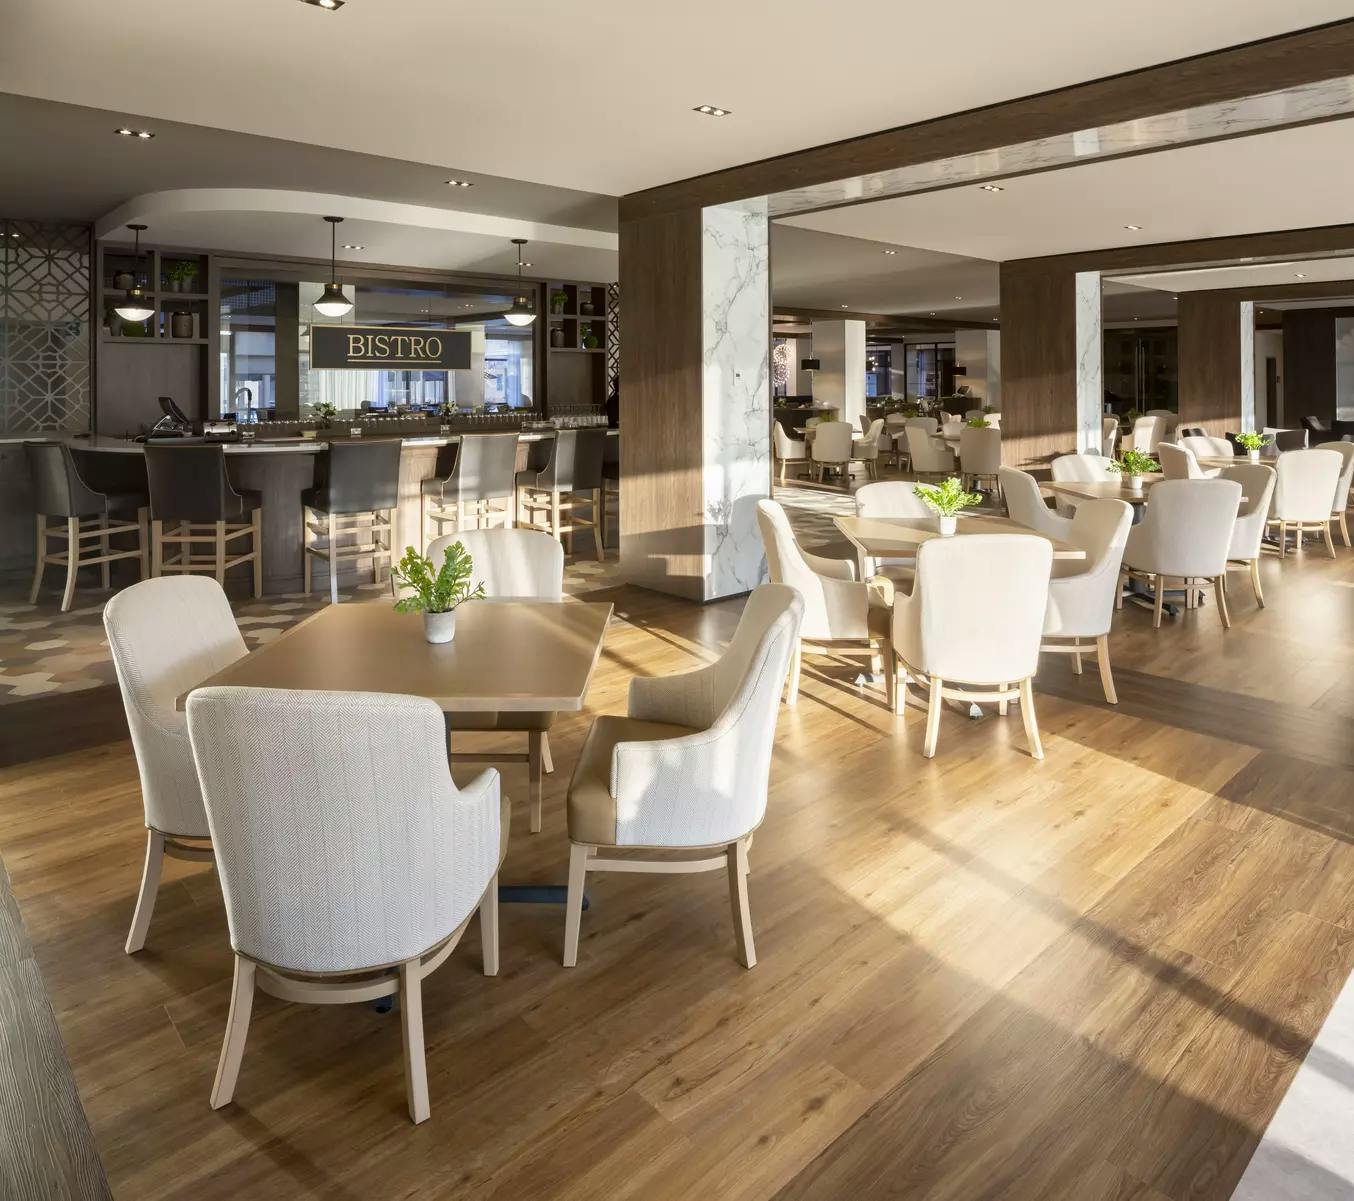 Grande salle à manger de style restaurant Chartwell L'Envol résidence pour retraités